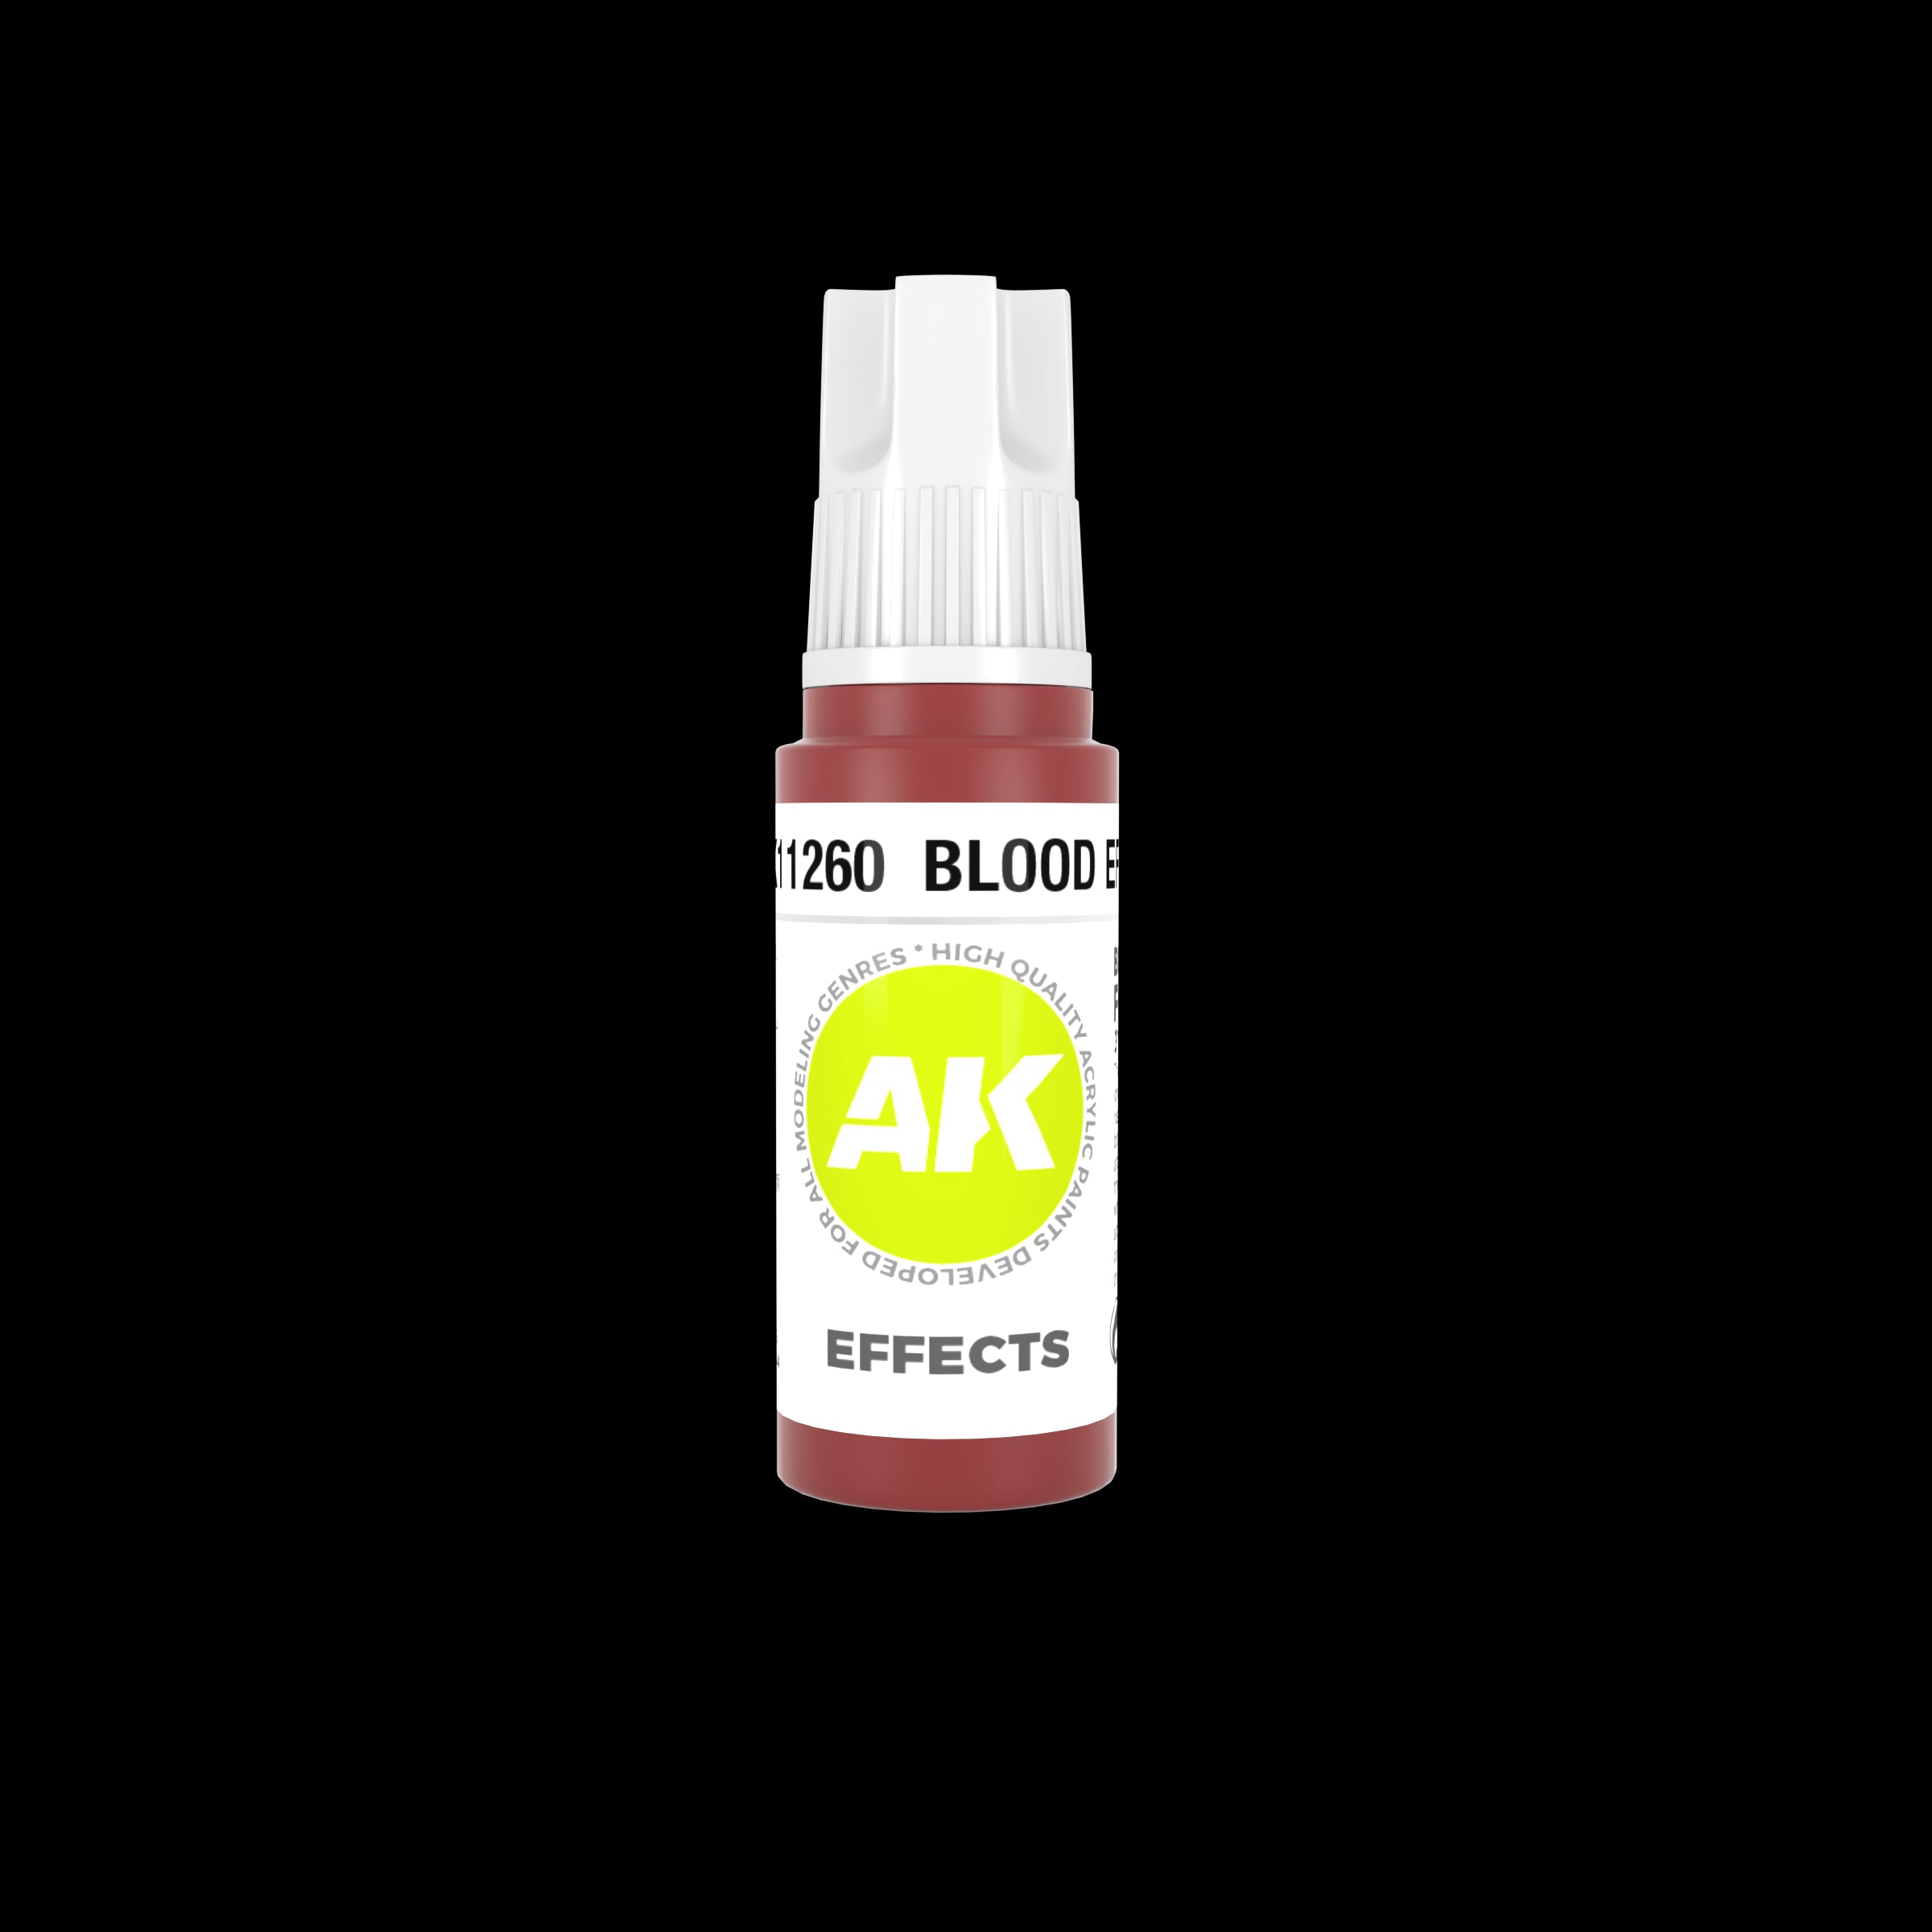 AK-11260 Blood effects 17 ml